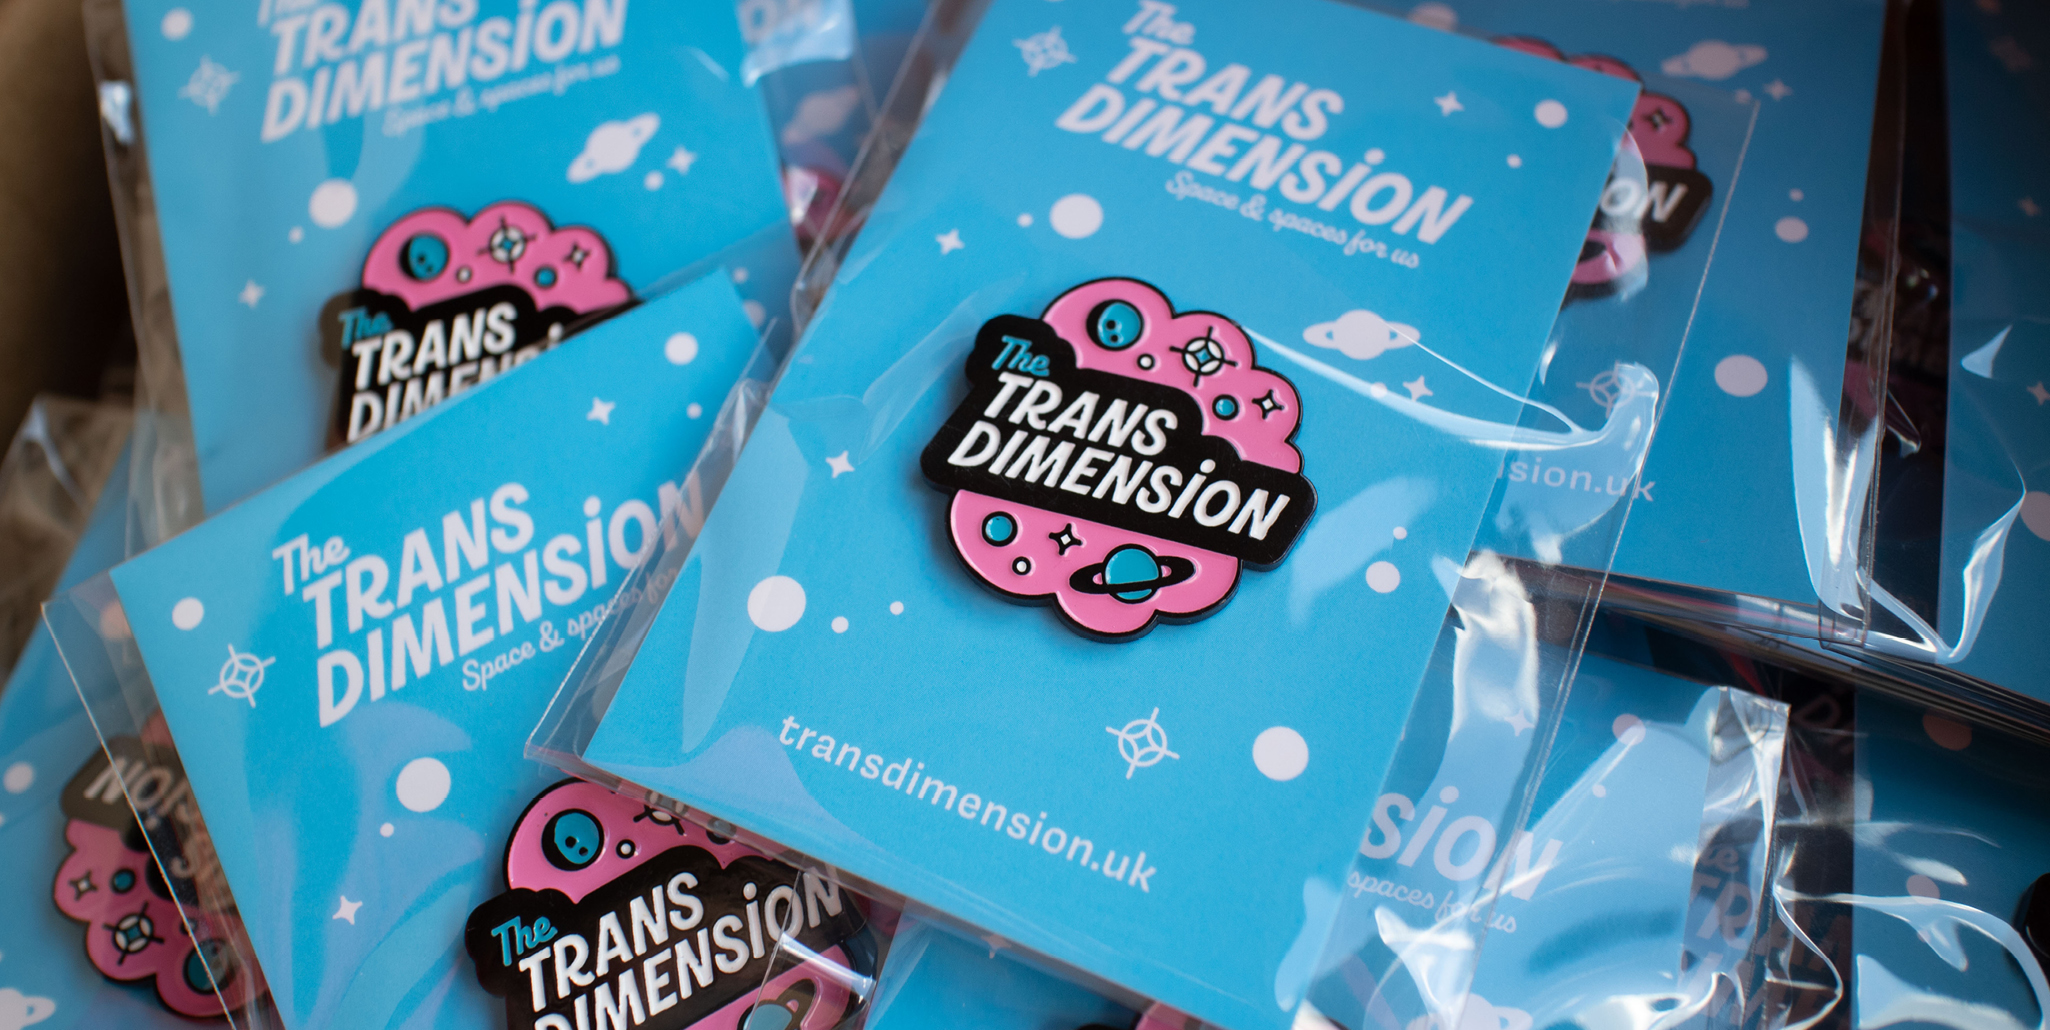 A pile of Trans Dimension enamel badges